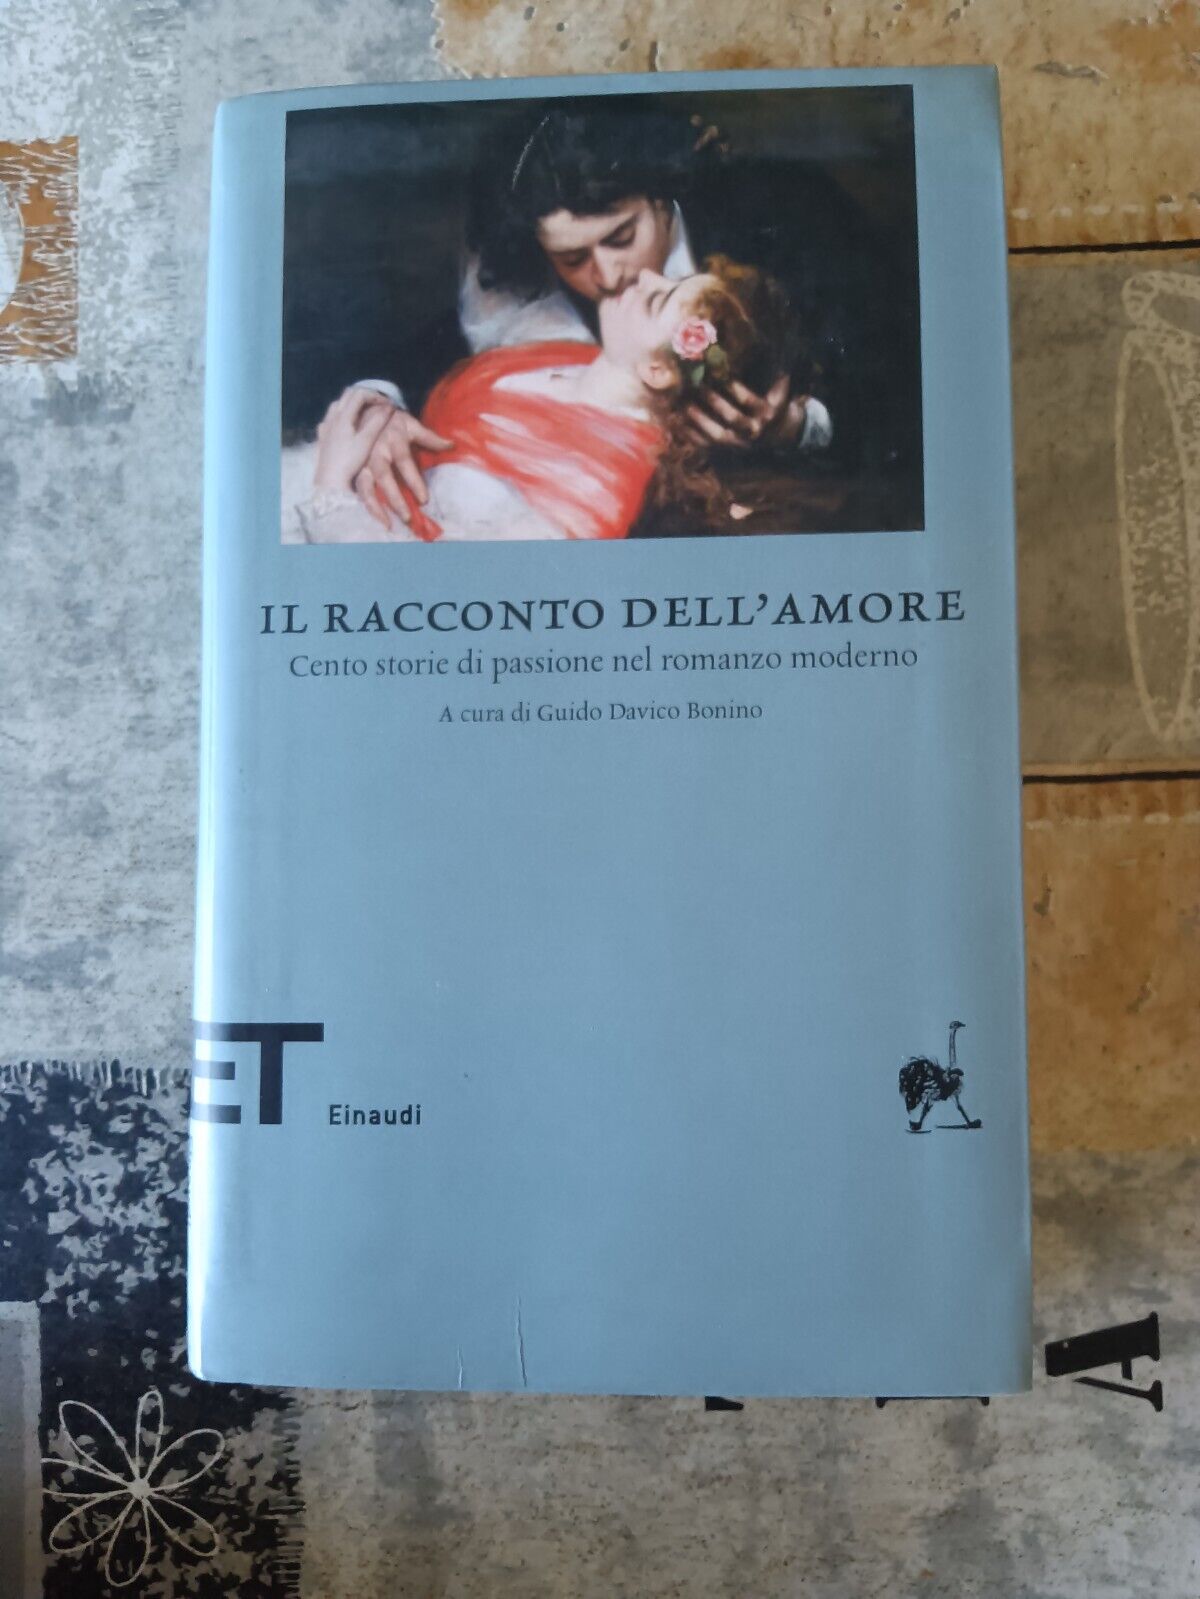 Il racconto dell’amore. Cento storie di passione nel romanzo moderno | Guido Davico Bonino, a cura di - Einaudi